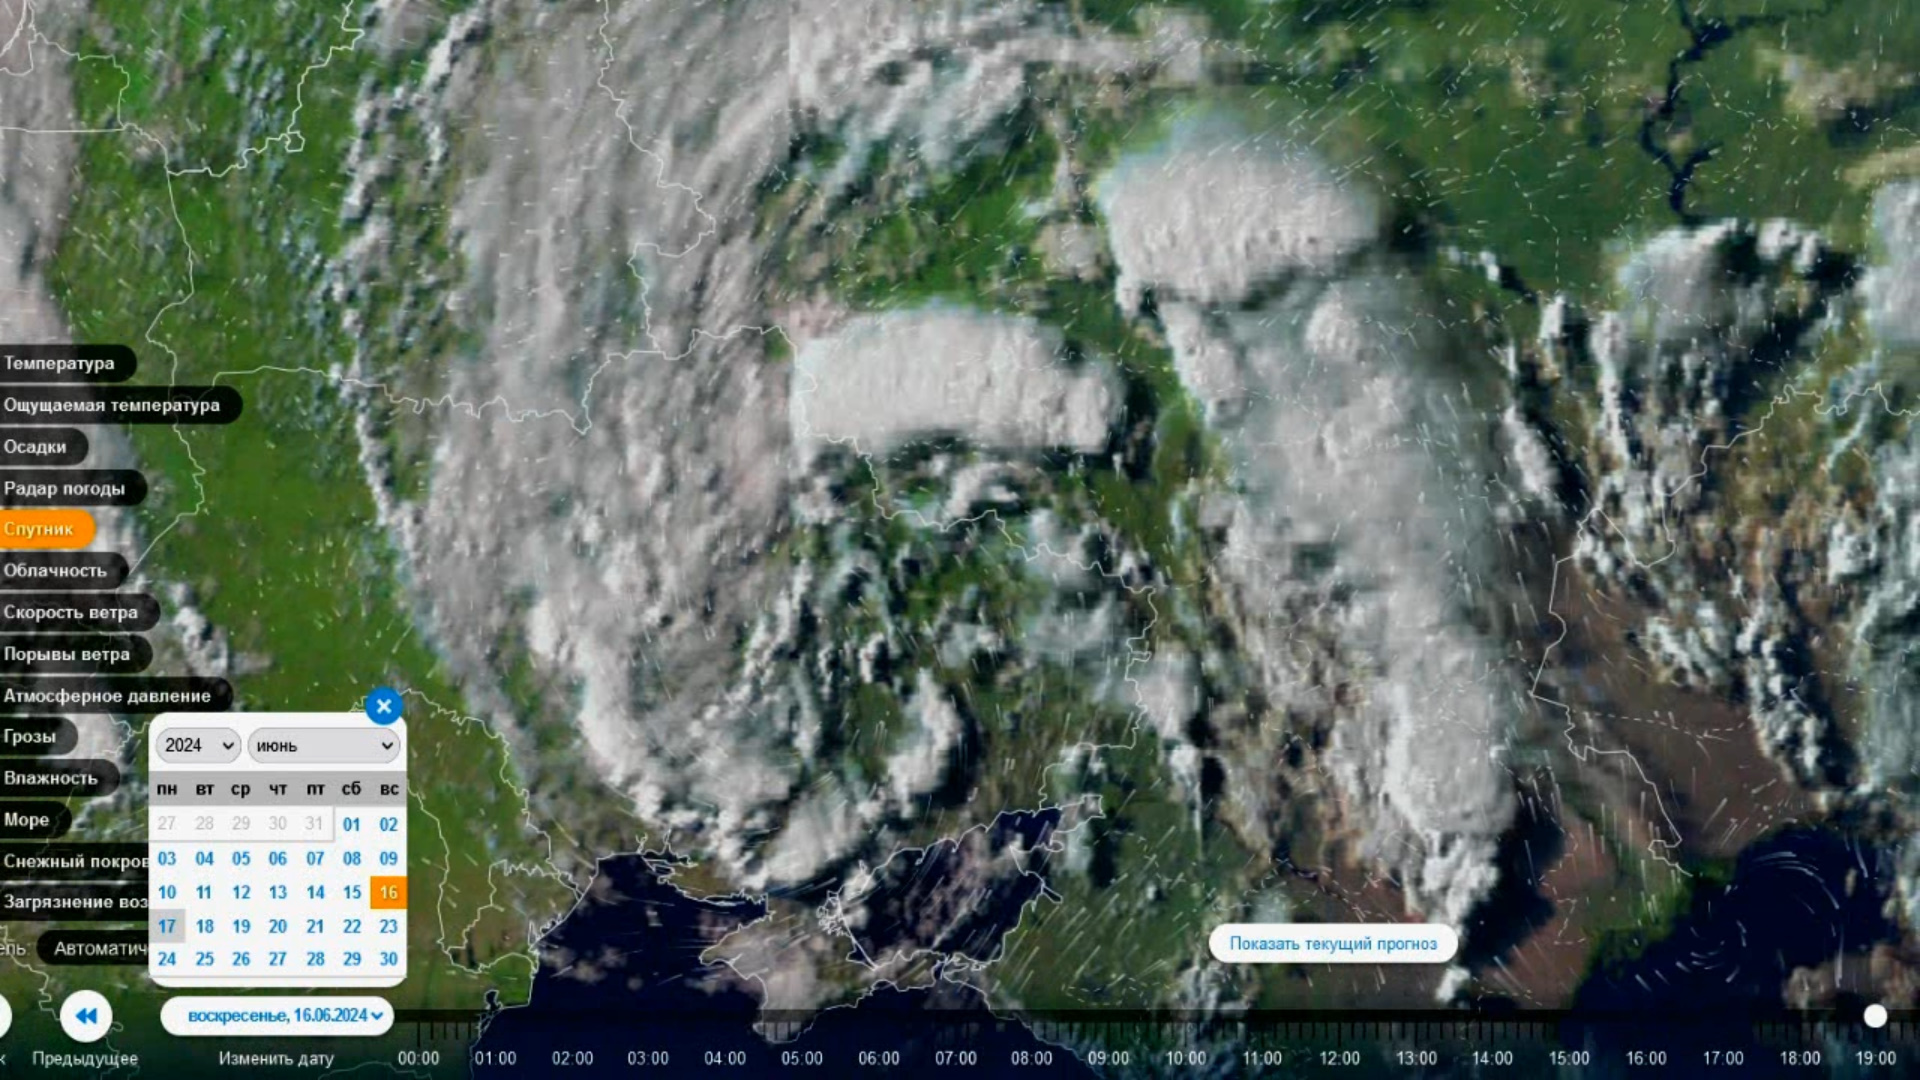 Дождливый южный циклон выходит на центр ЕТР. Вид со спутника 16.06.2024